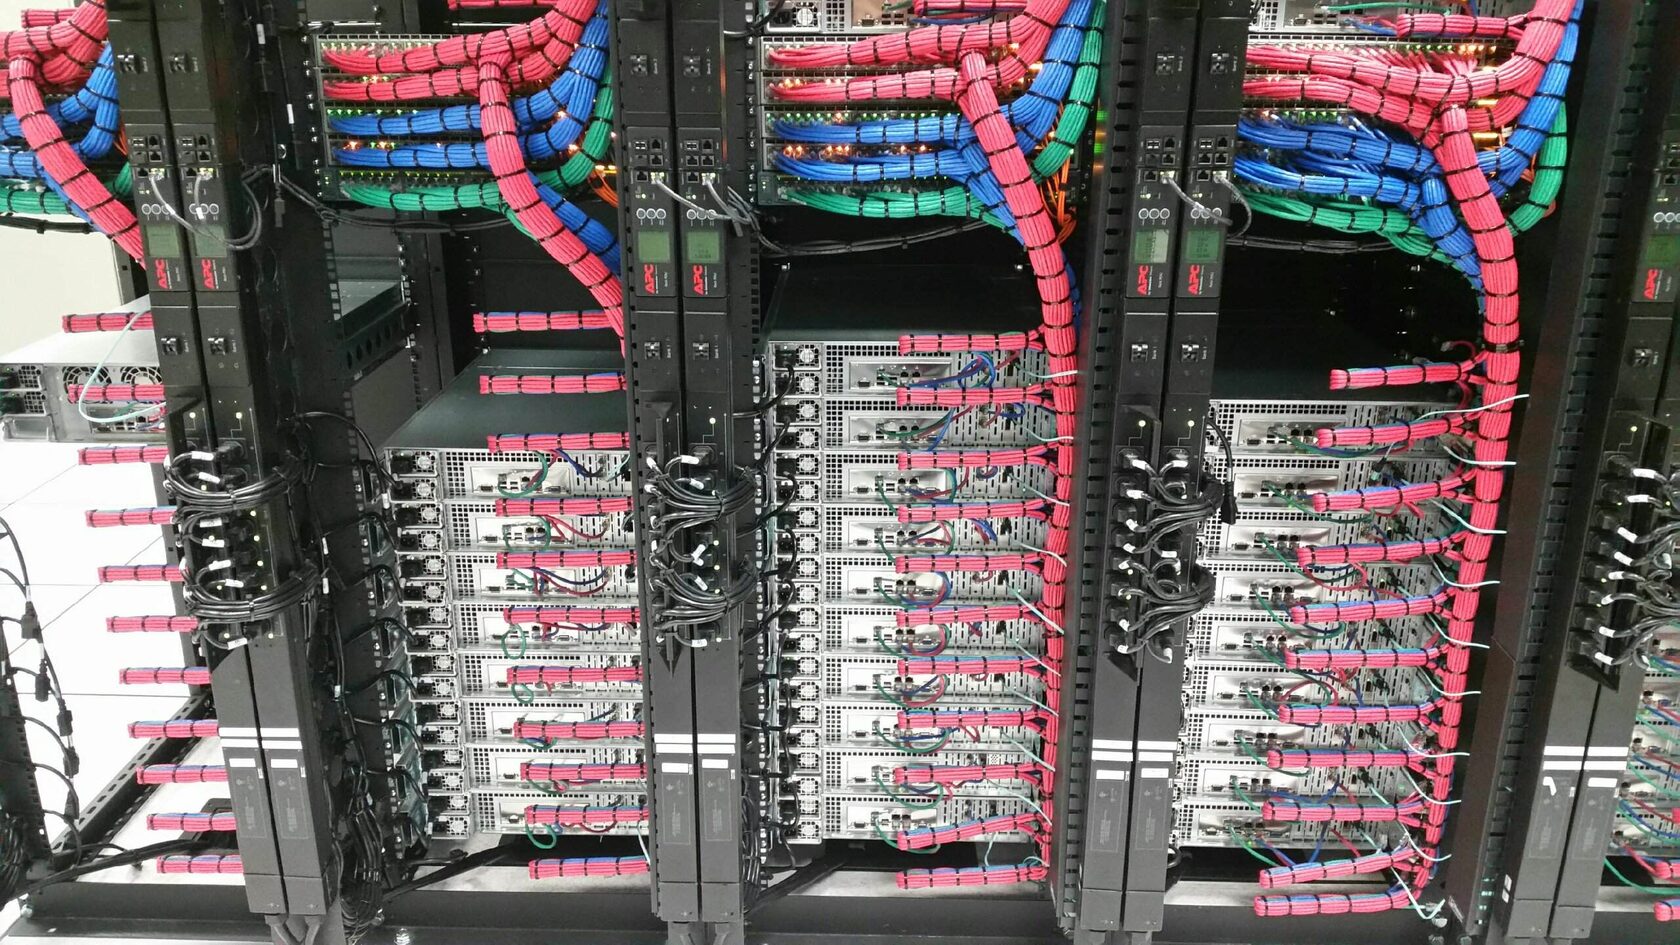 укладка кабелей в серверном шкафу